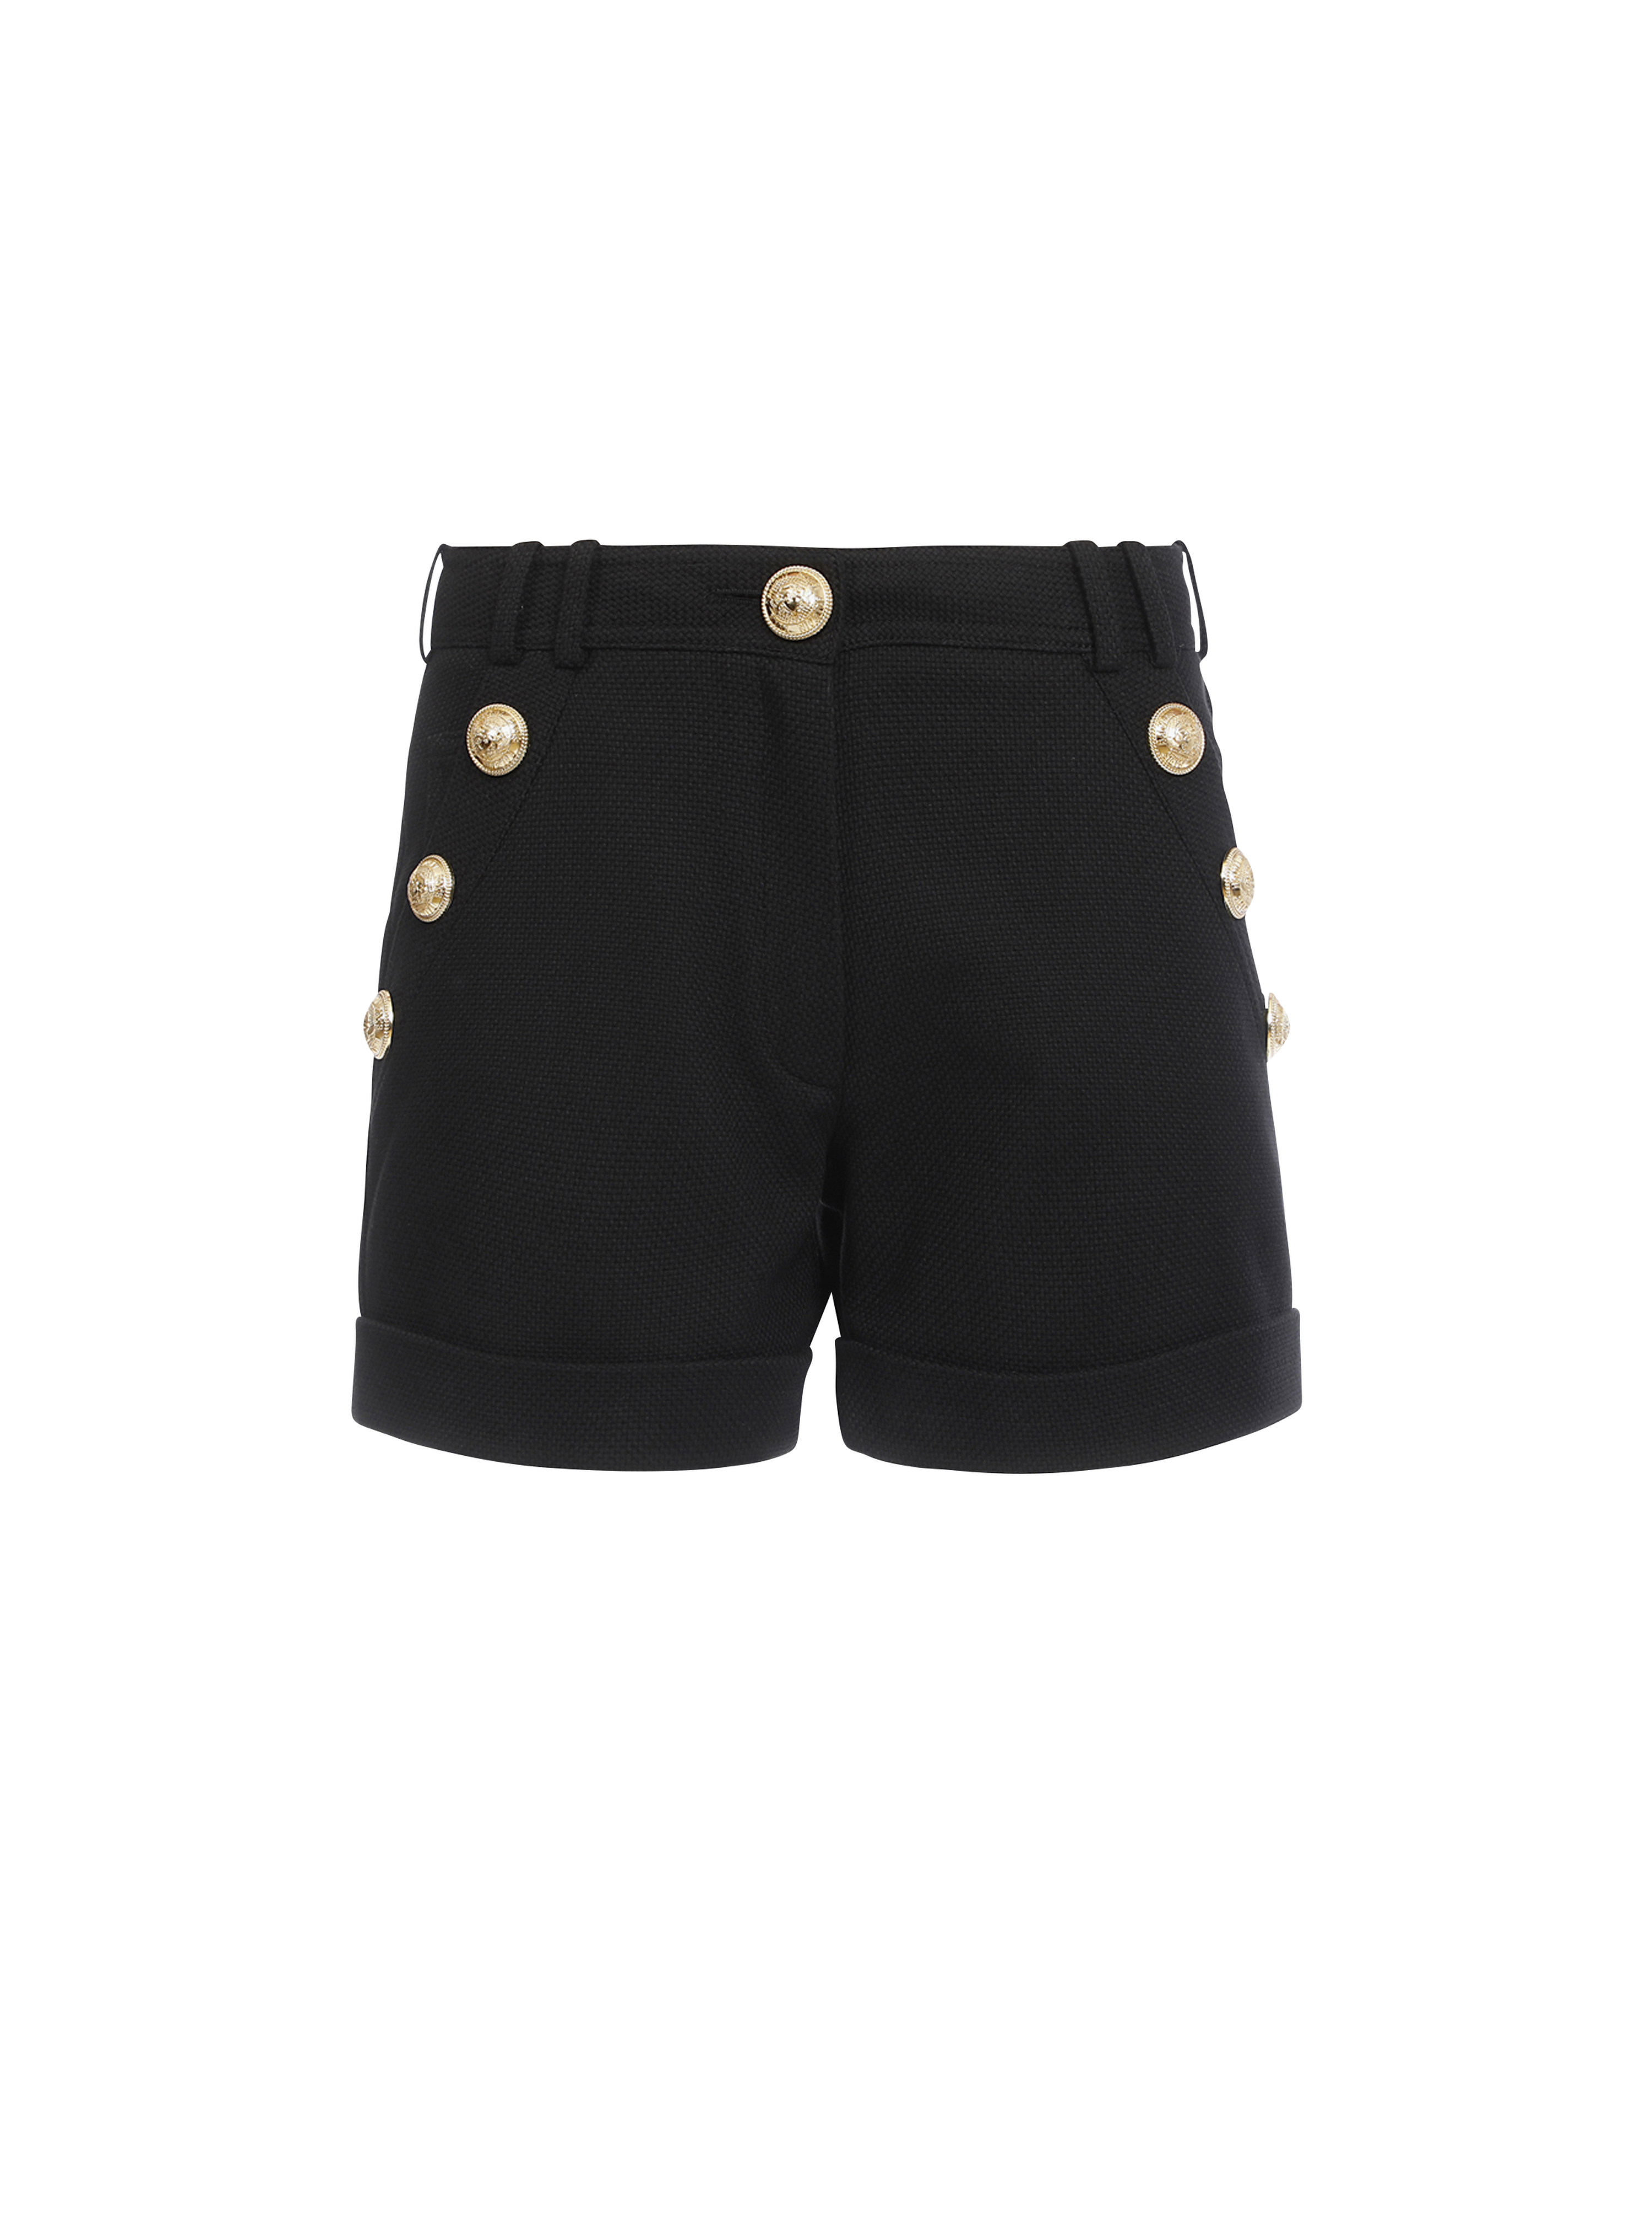 Cotton low-rise shorts, black